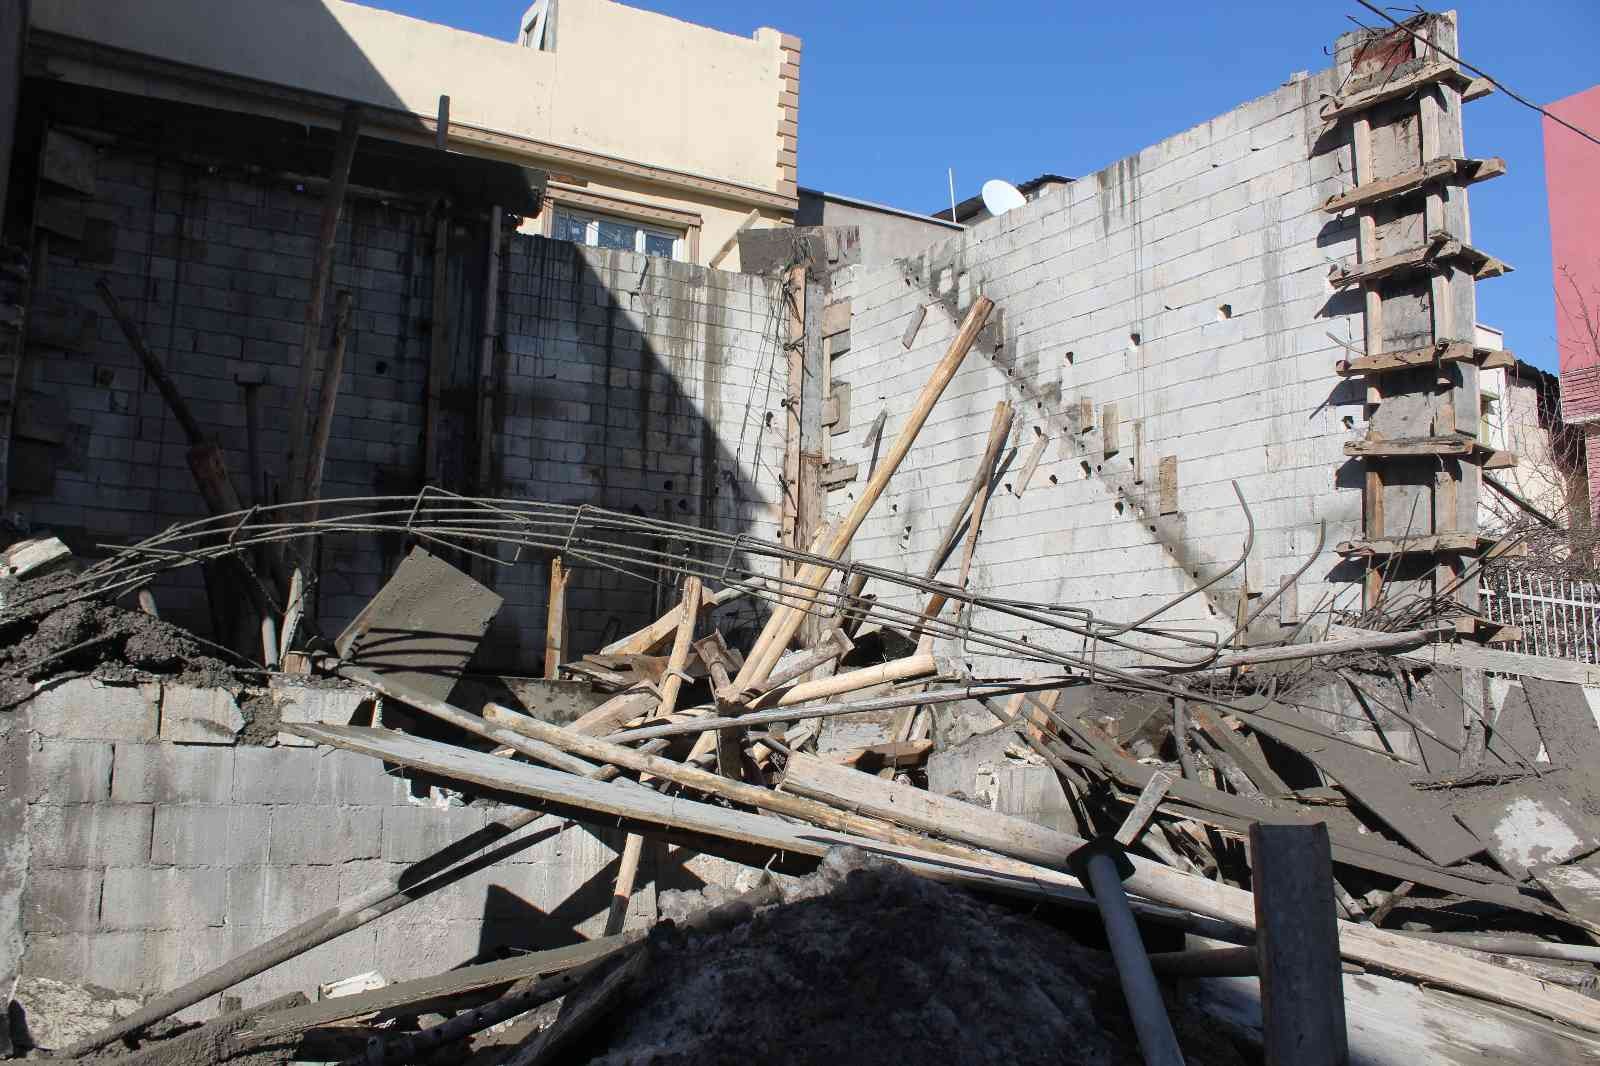 Gaziantep’te beton dökülürken inşaat kalıbı çöktü: 3 yaralı #gaziantep